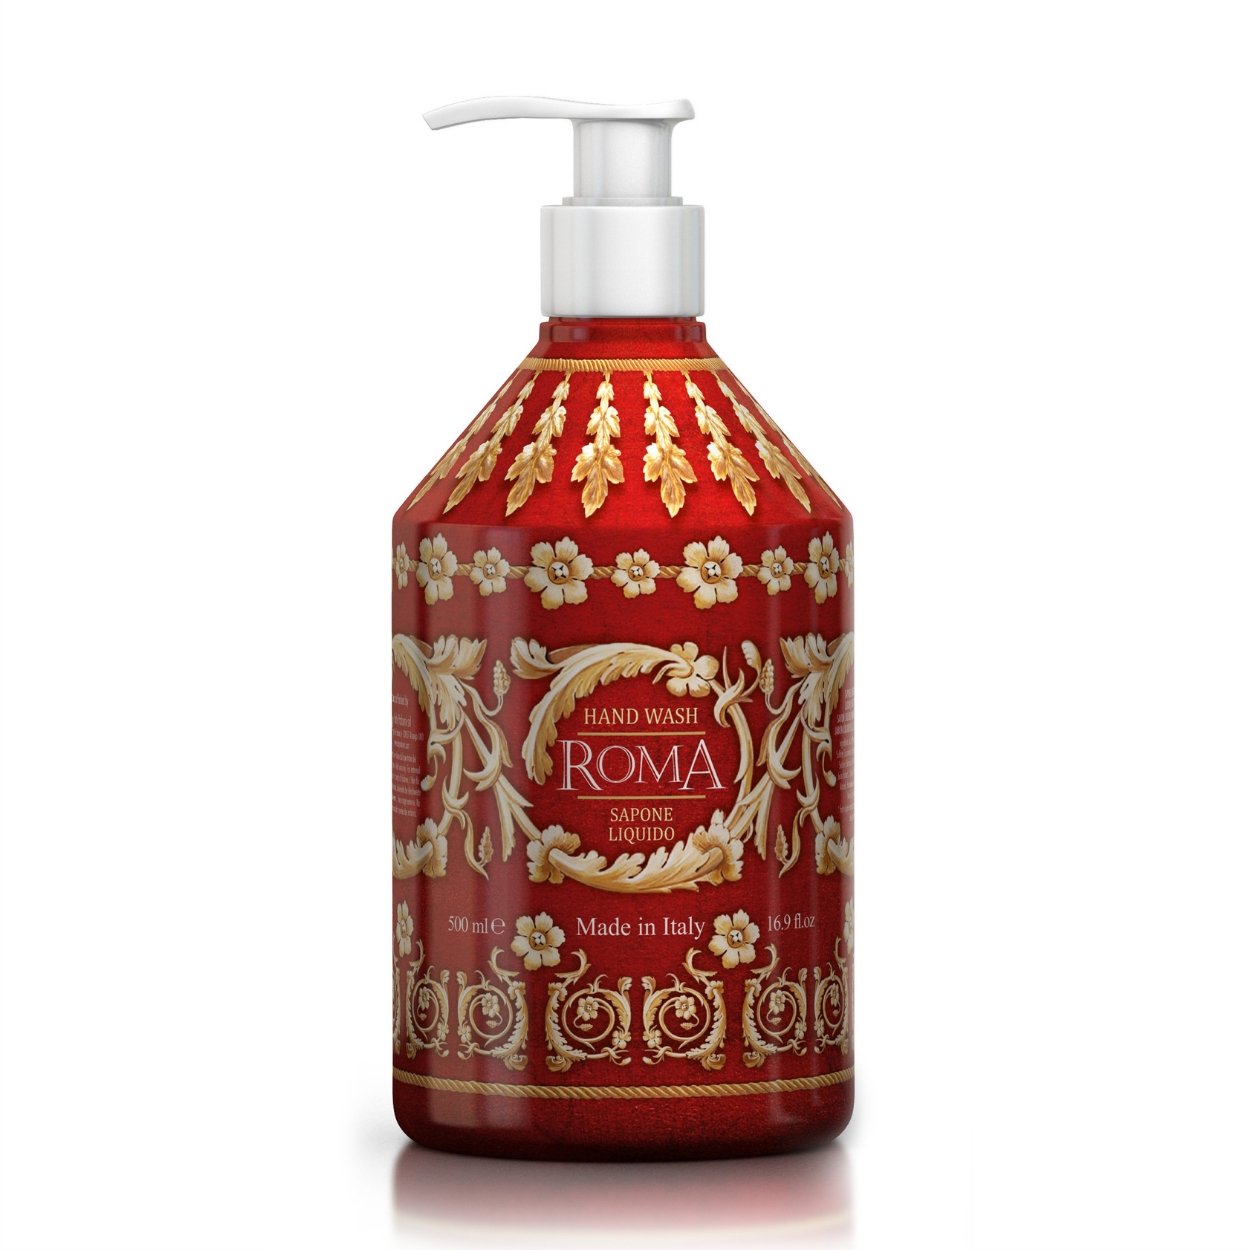 Le Maioliche | ROMA Liquid Hand Soap 500ml - |VESIMI Design| Luxury and Rustic bathrooms online